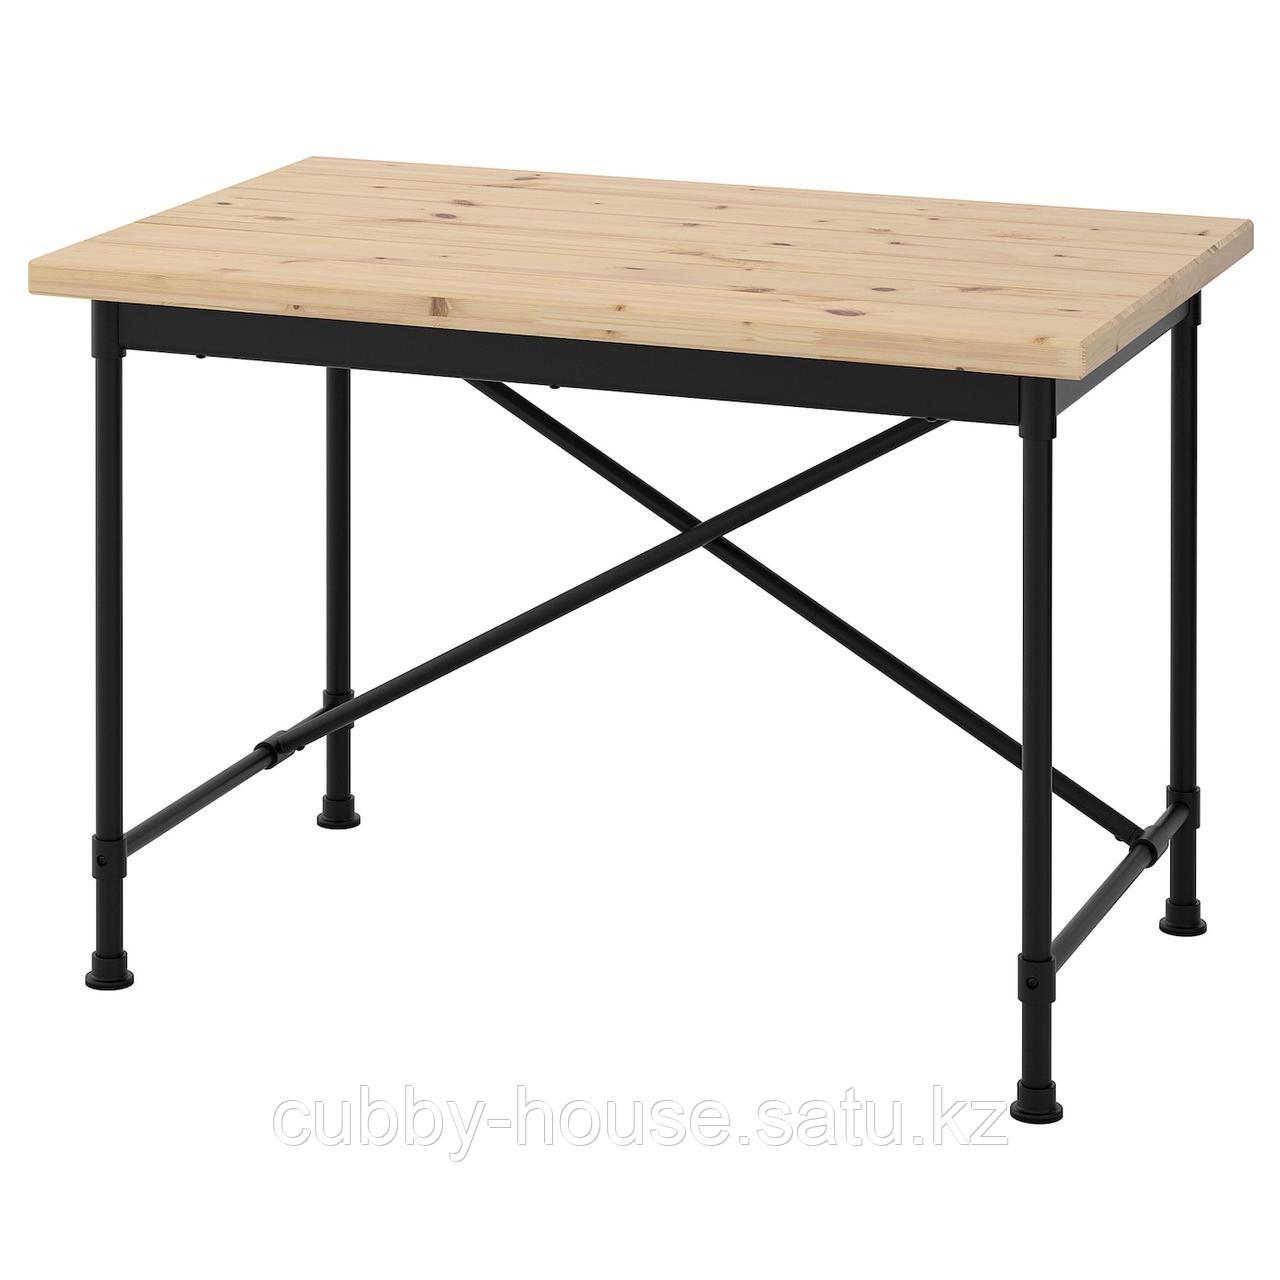 КУЛЛАБЕРГ Письменный стол, сосна, черный, 110x70 см